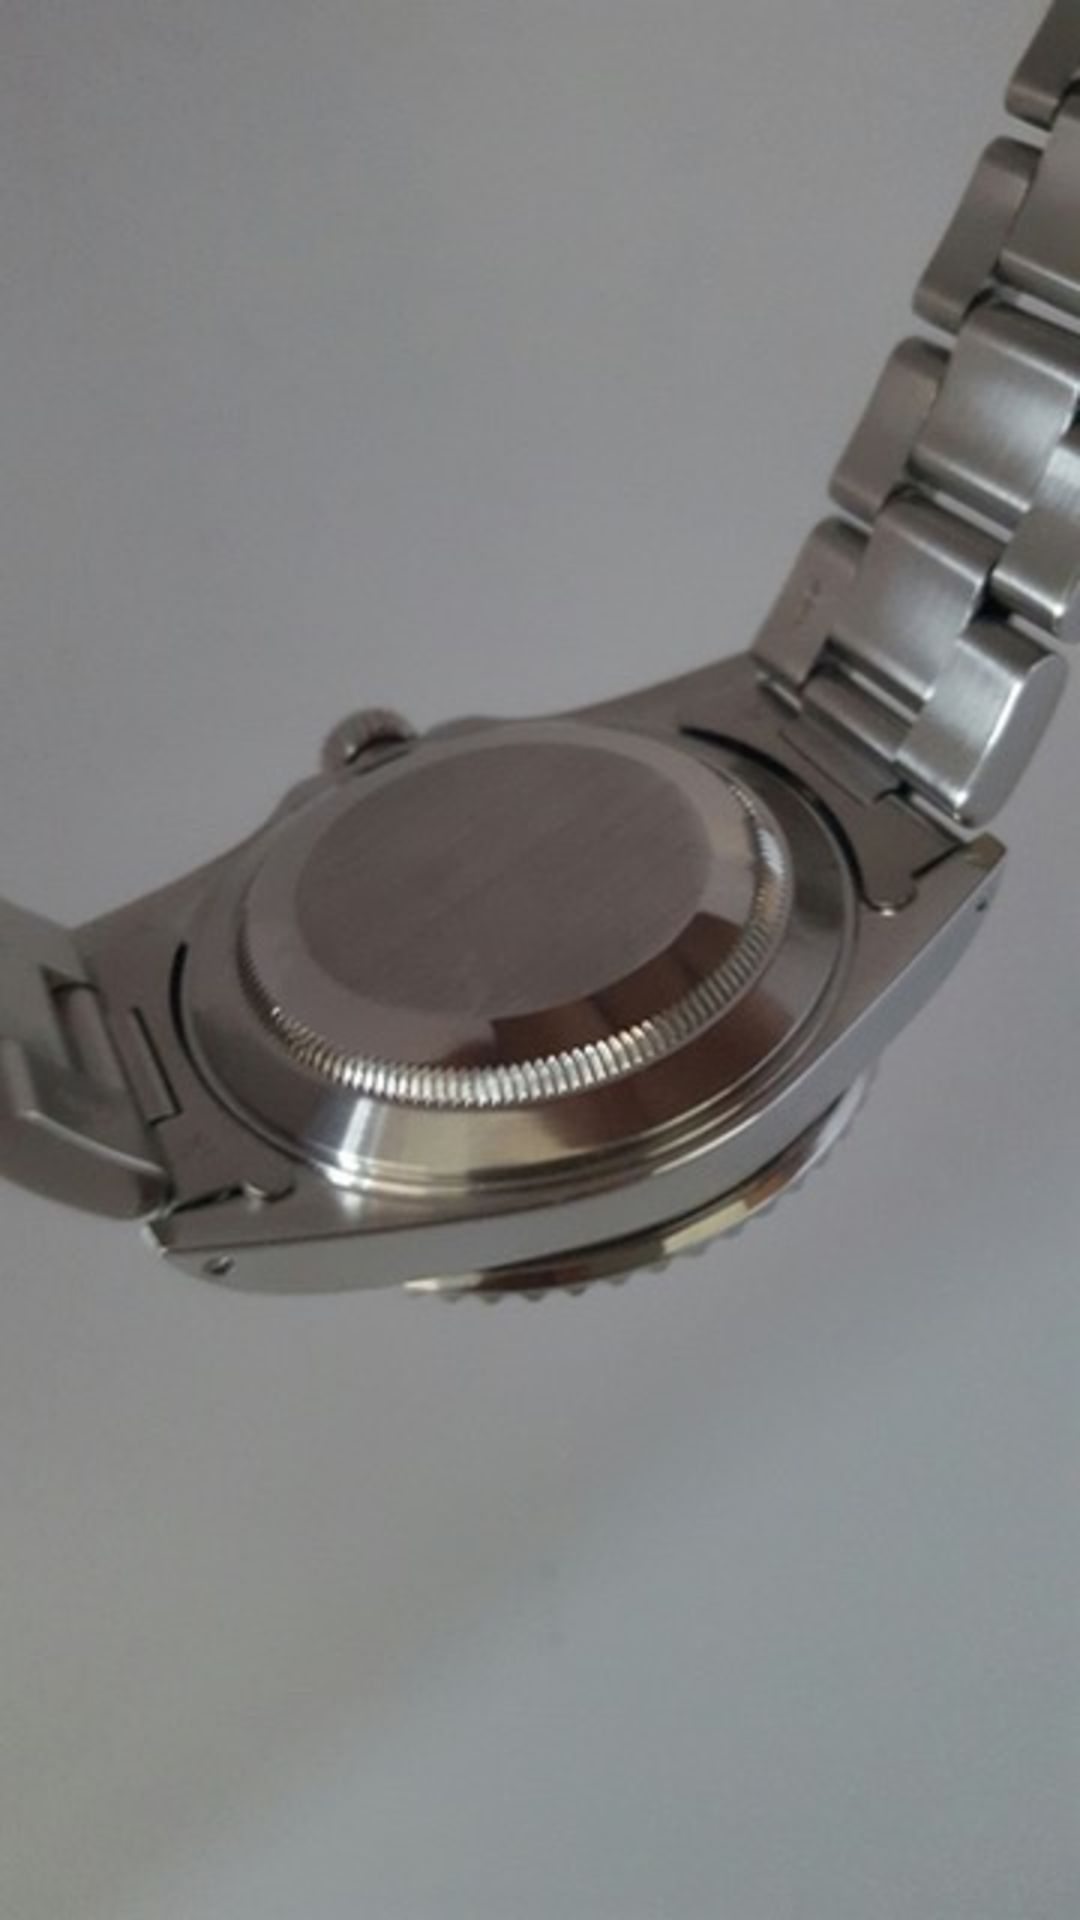 Rolex Submariner 16610 watch - Image 8 of 8